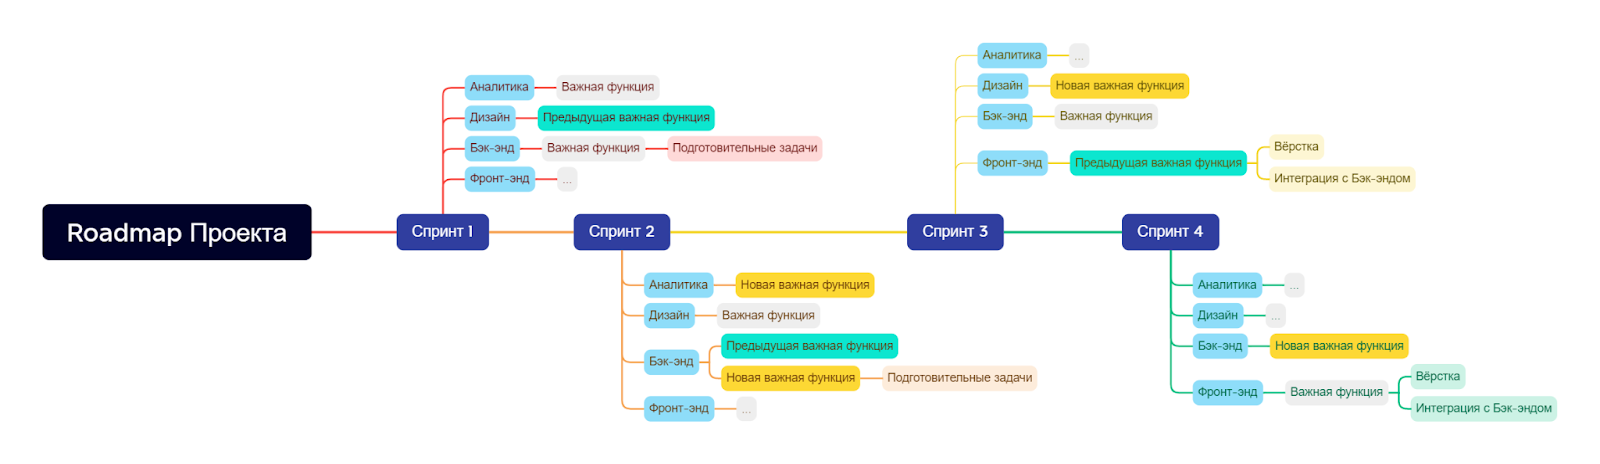 Пример roadmap проекта при работе по методологии Scrumban